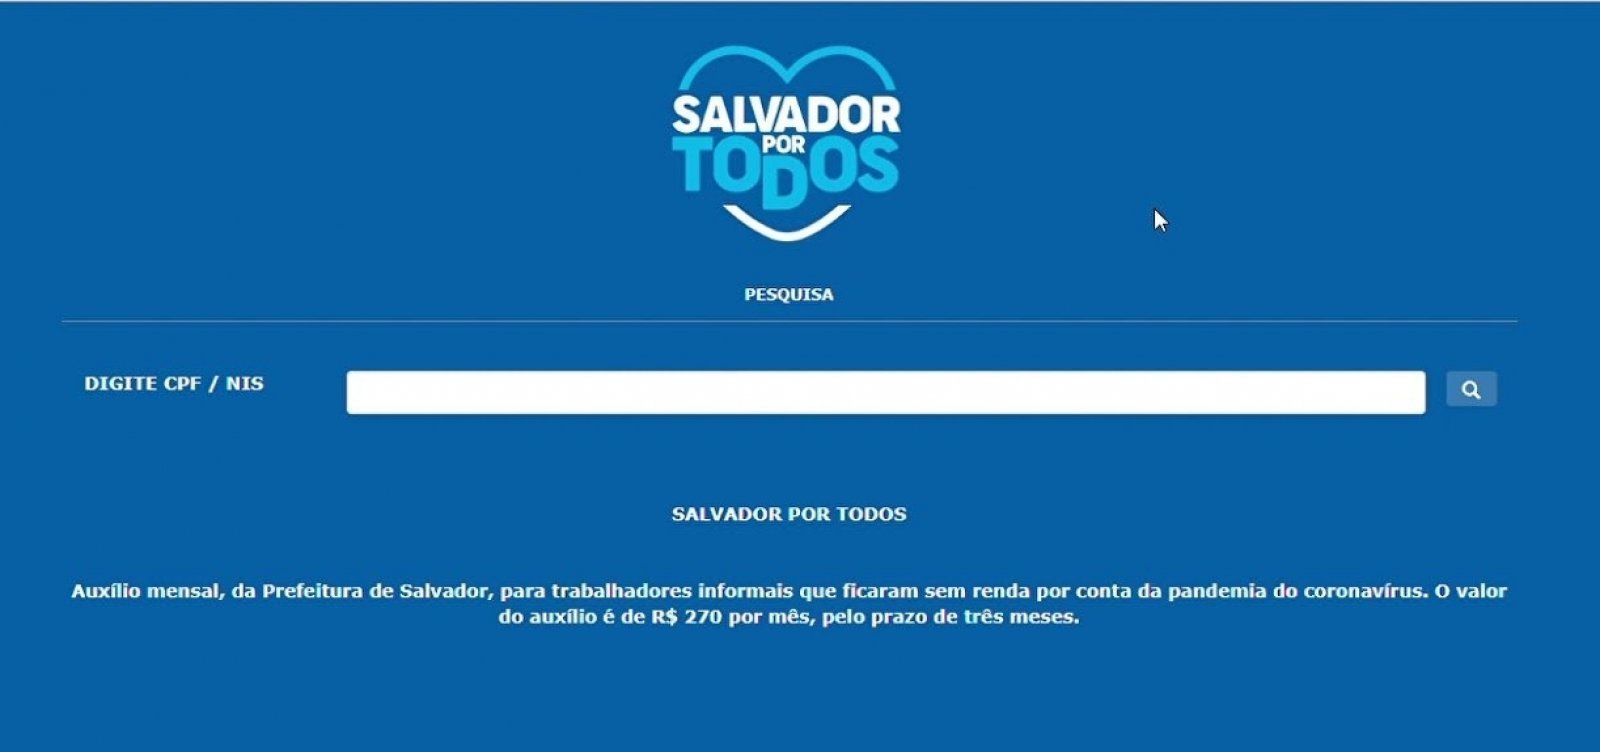 Sétima parcela do 'Salvador por Todos' começa a ser paga nesta sexta-feira